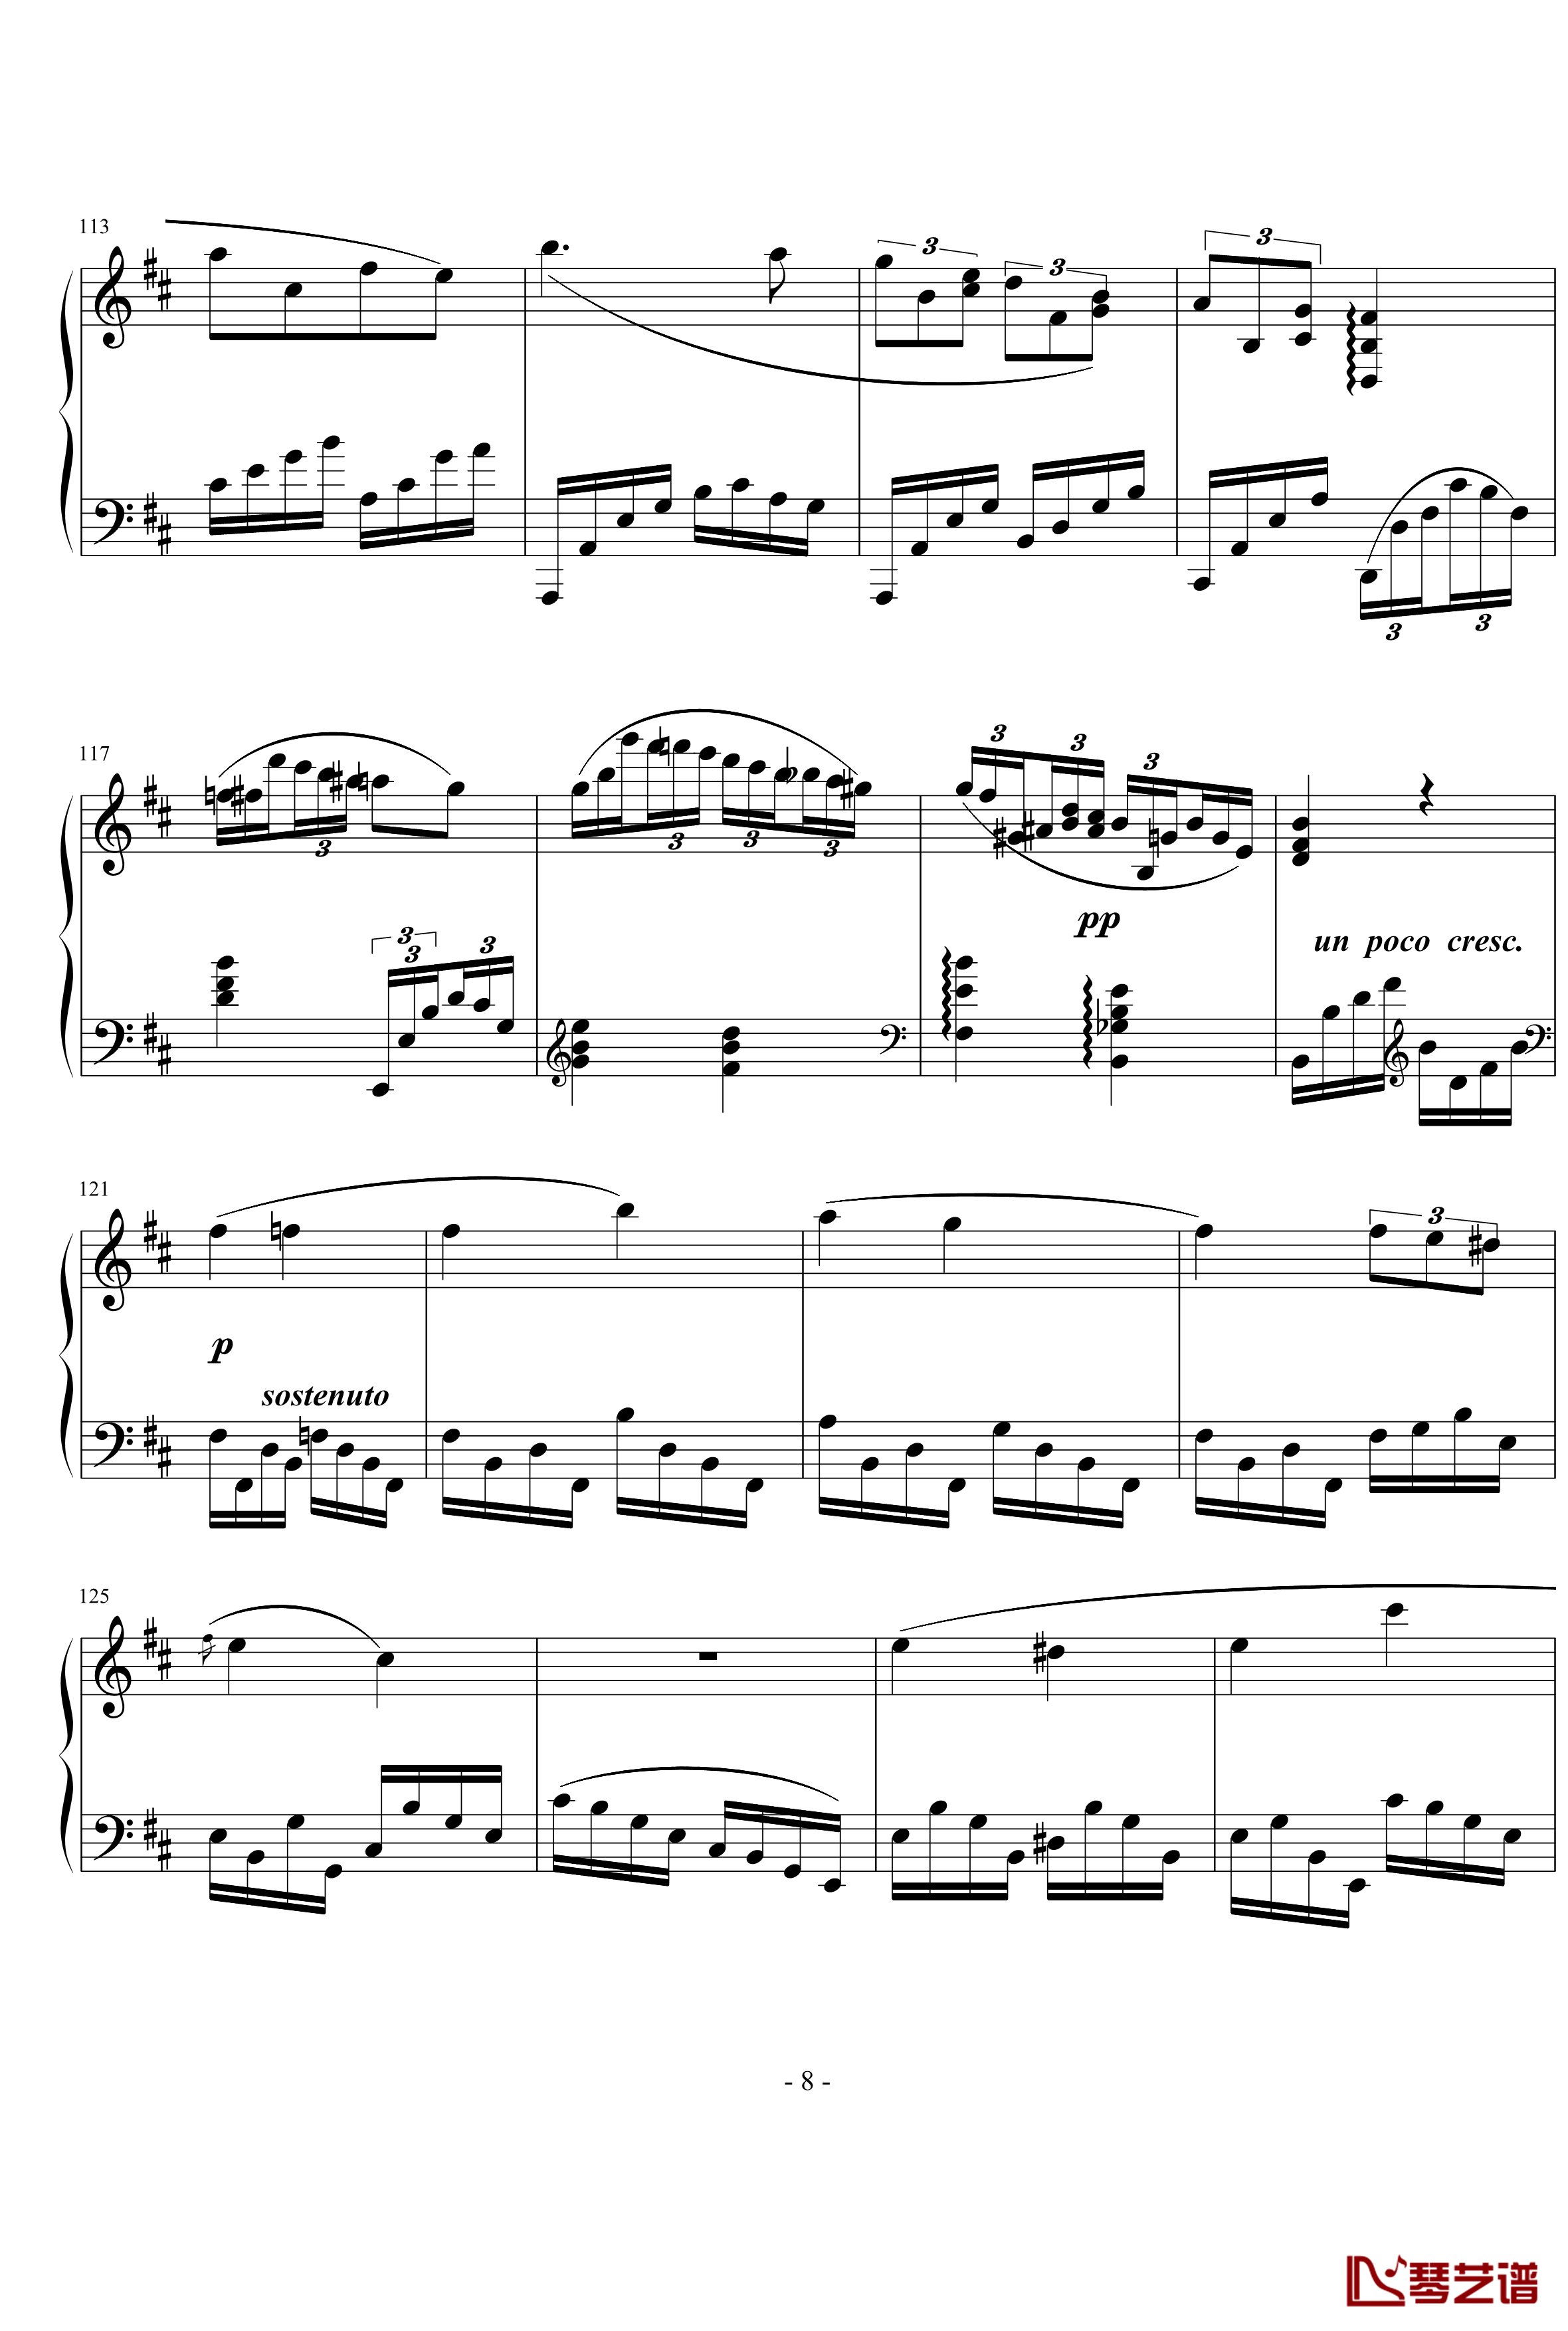 幻想曲钢琴谱-nyride